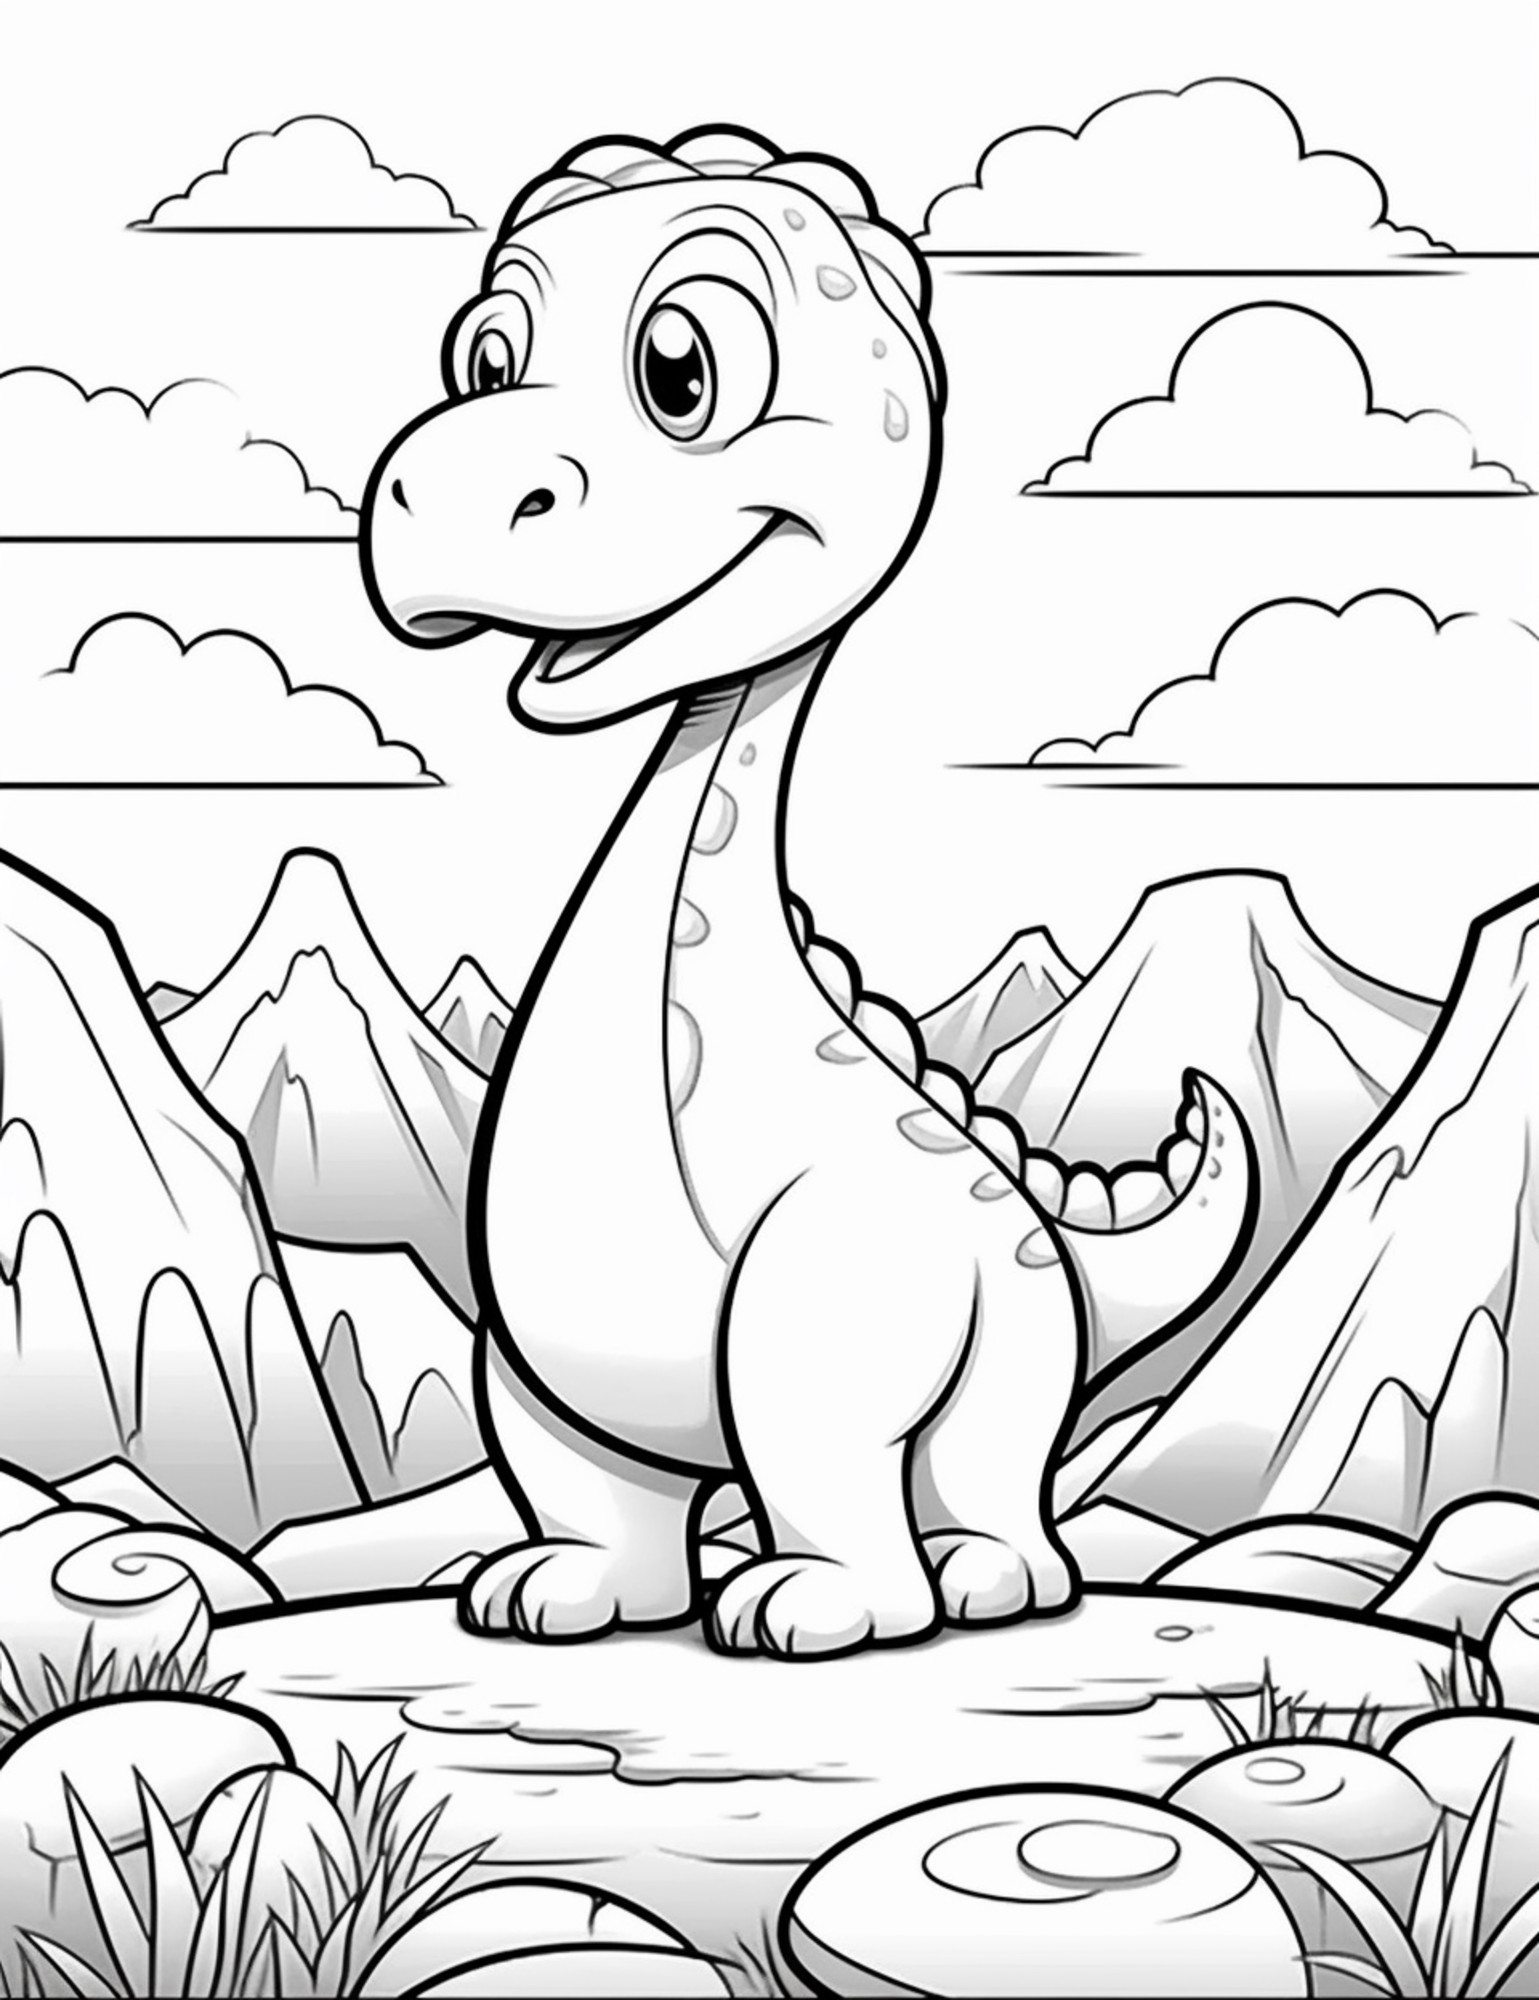 Раскраска для детей: сказочный динозавр с большой головой